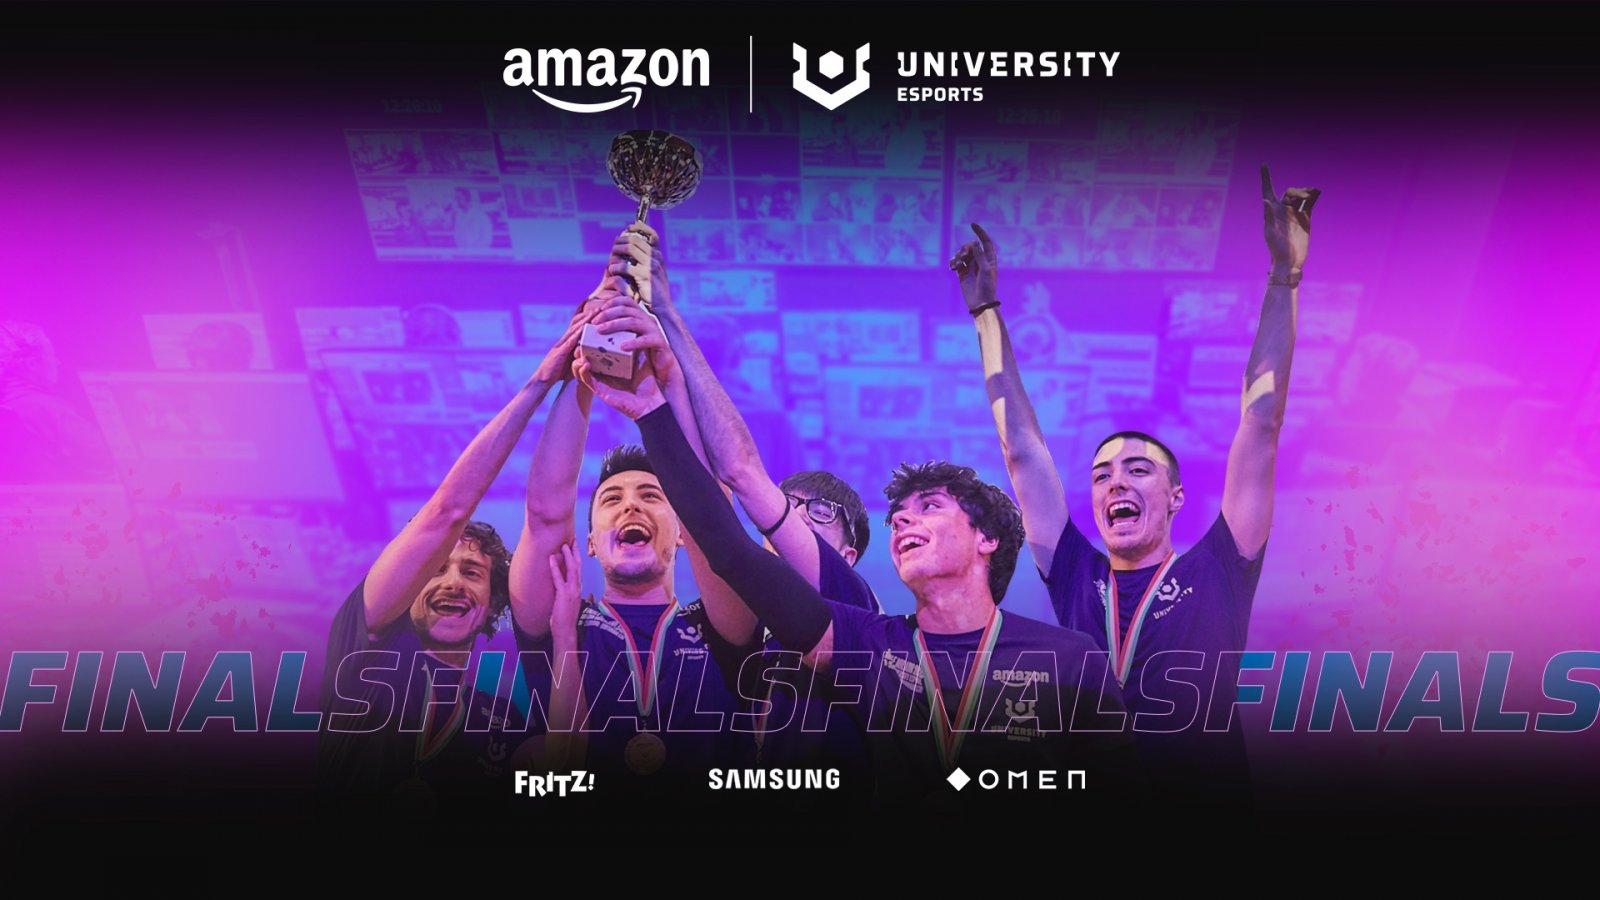 Grande successo per le Finalissime di Amazon University Esports